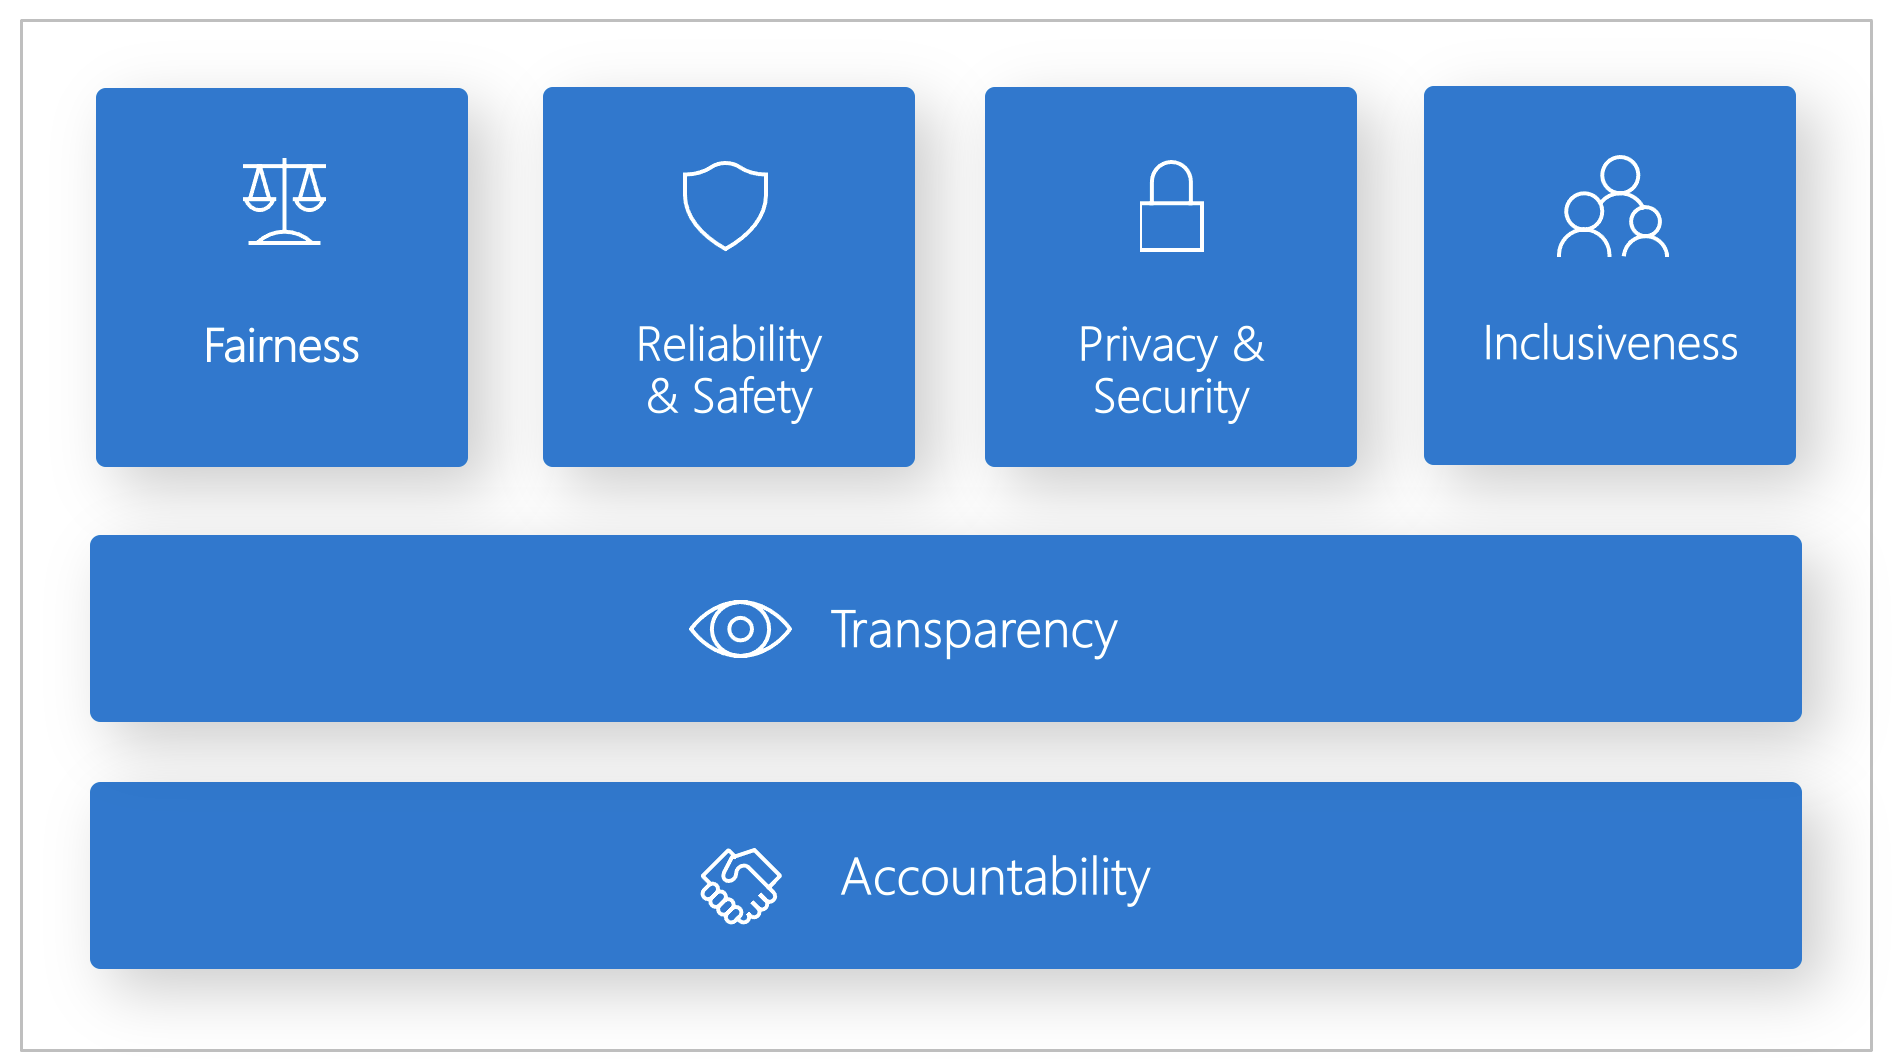  Diagram van de zes principes van Microsoft Responsible AI, die redelijkheid, betrouwbaarheid en veiligheid, privacy en beveiliging, inclusiefheid, transparantie en verantwoordelijkheid omvat.